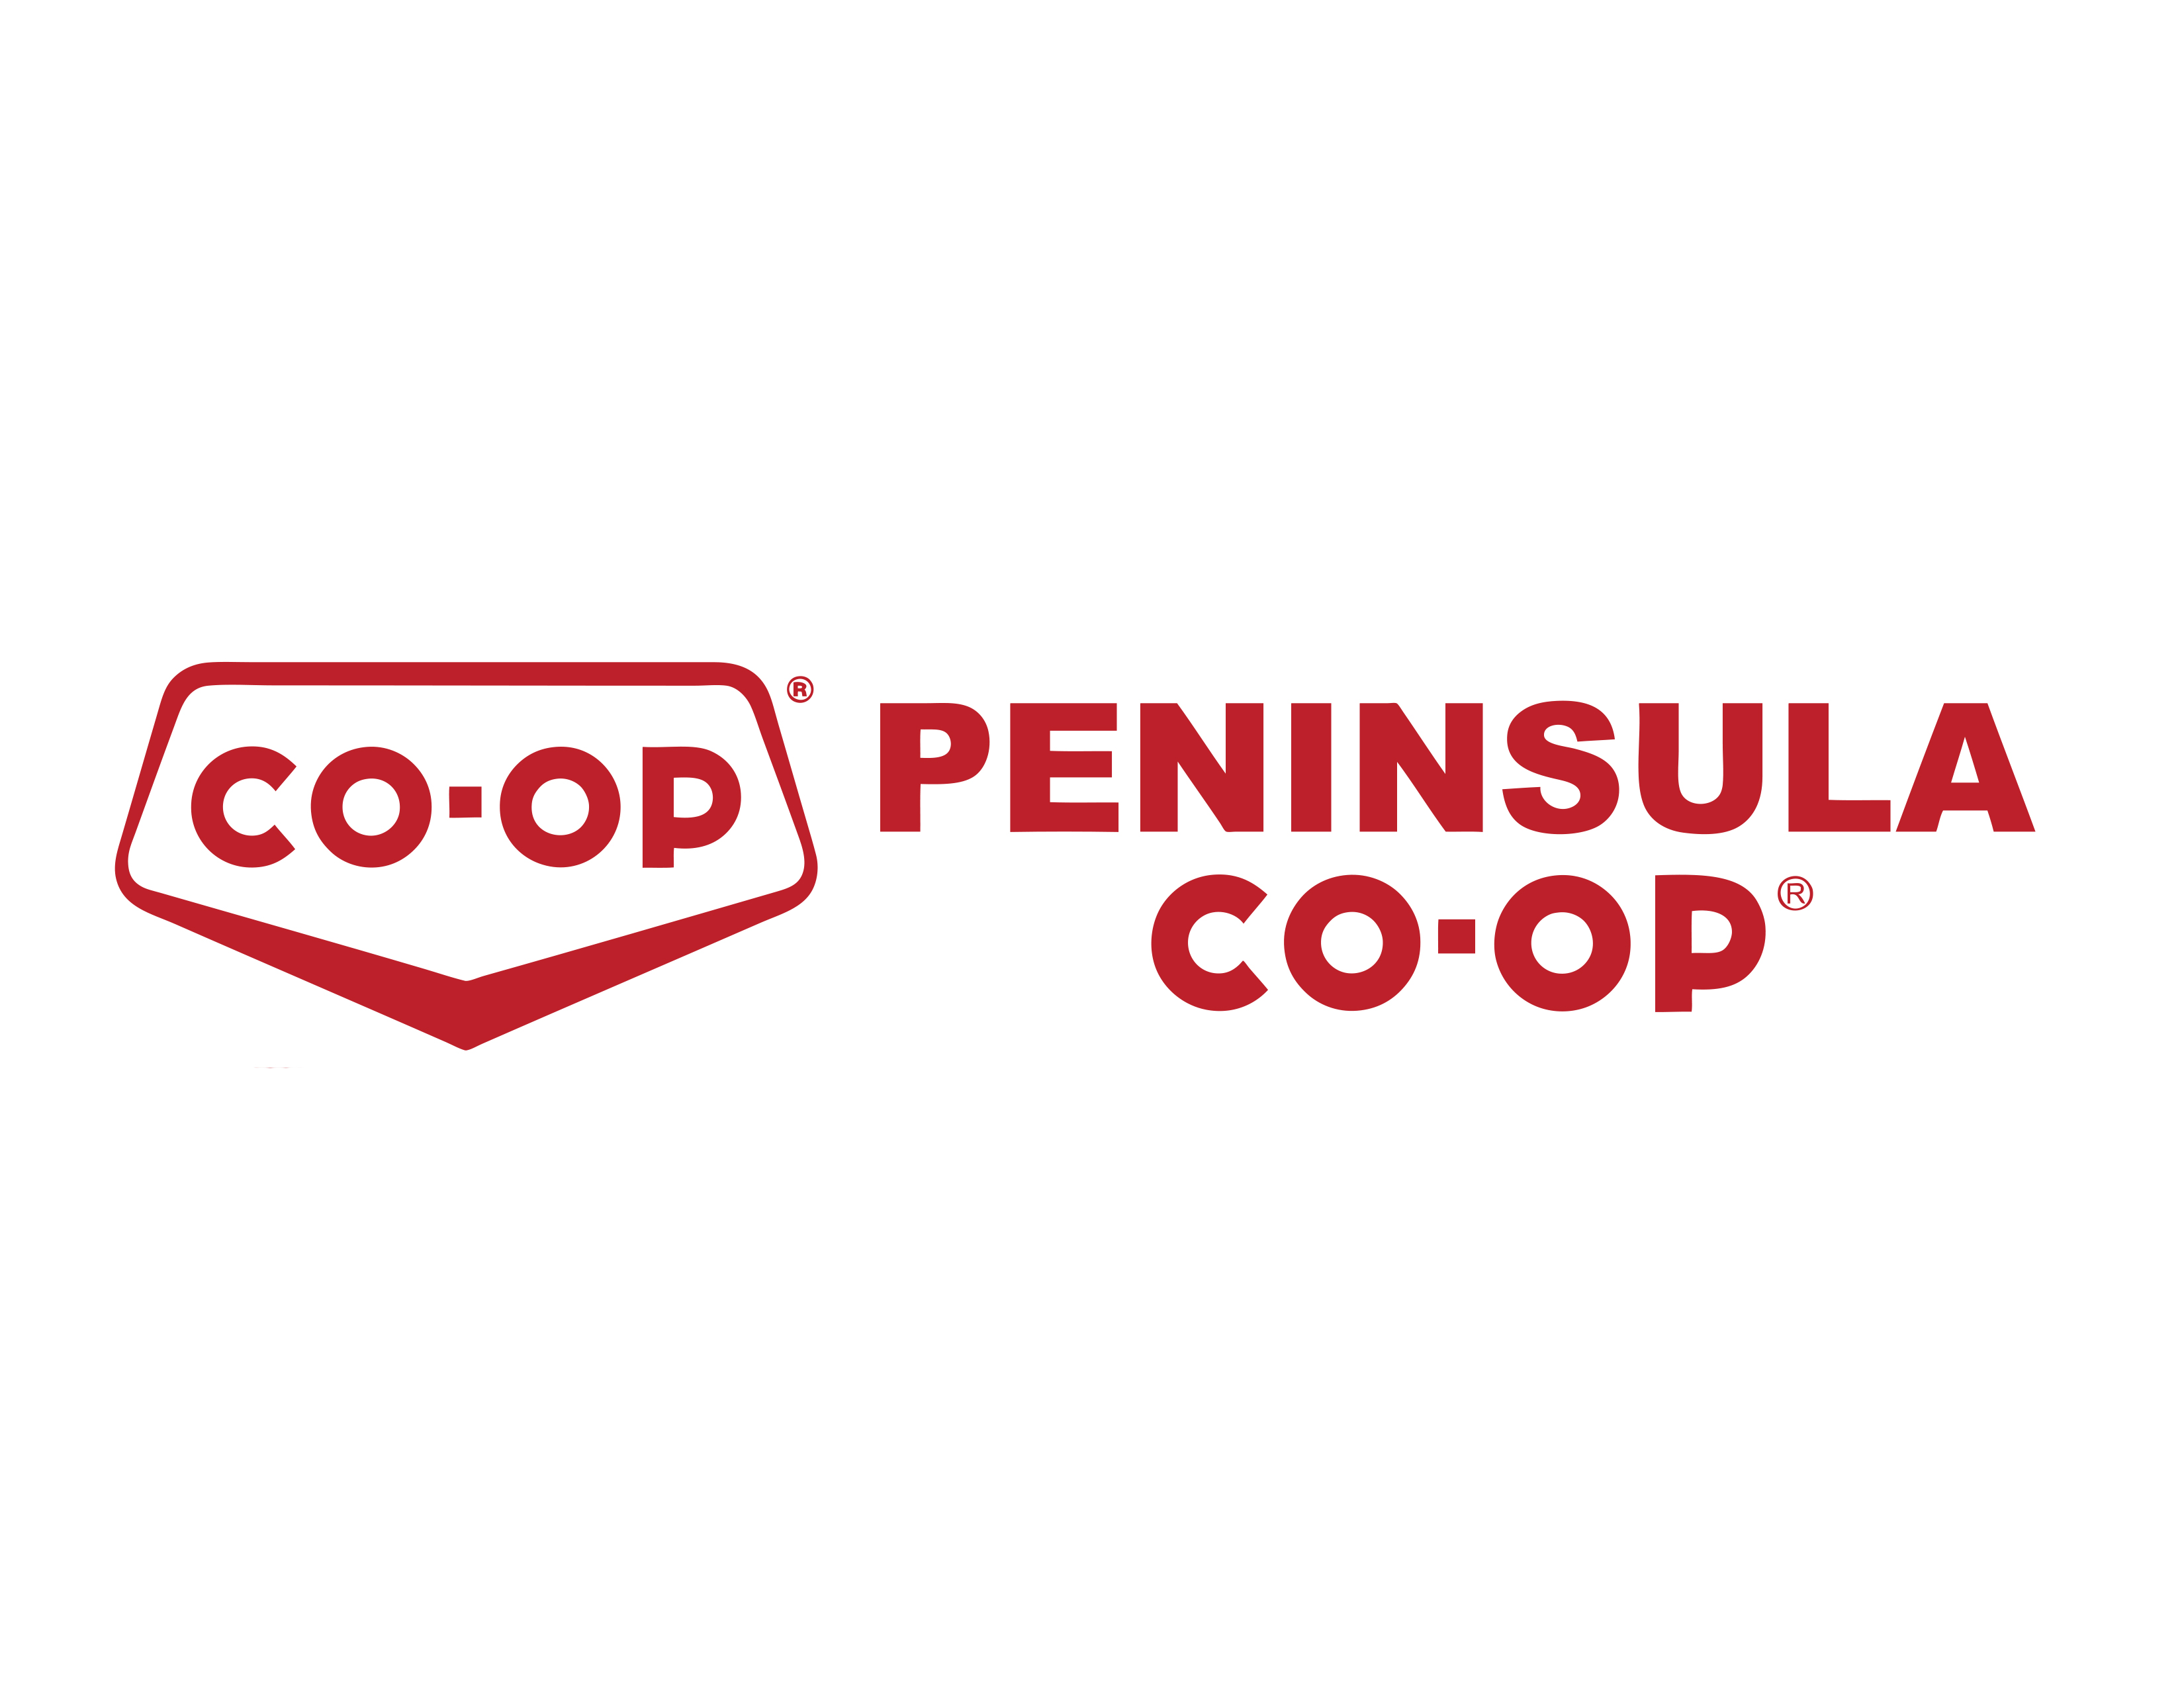 Peninsula Coop